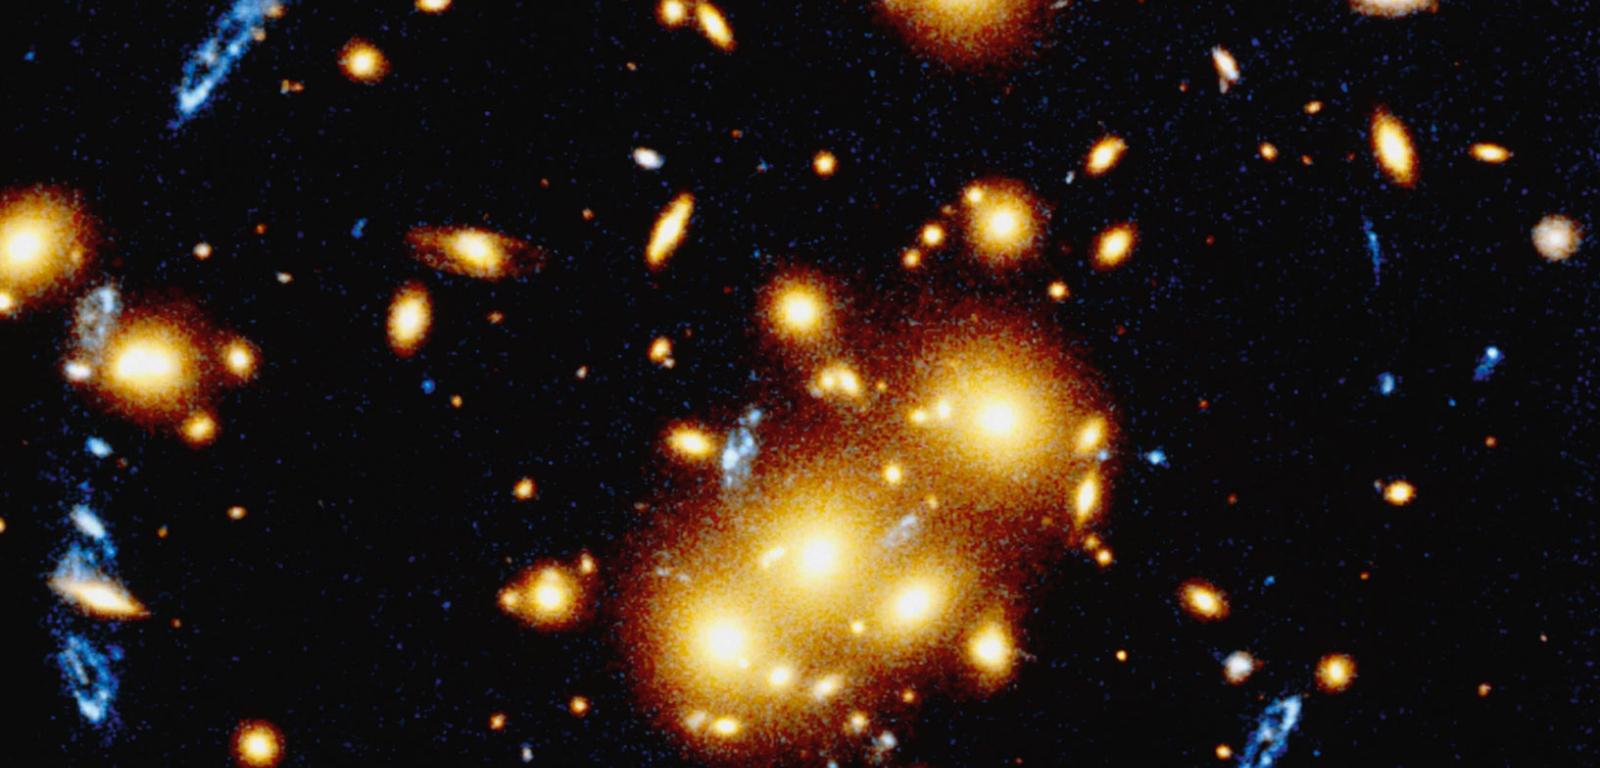 Gromada galaktyk oznaczona symbolem 0024+1654, leżąca w odległości 5 mld l.ś. od nas. Działa jak silna soczewka grawitacyjna powiększająca dwa razy dalej położoną galaktykę widoczną tu pod postacią niebieskich plam.